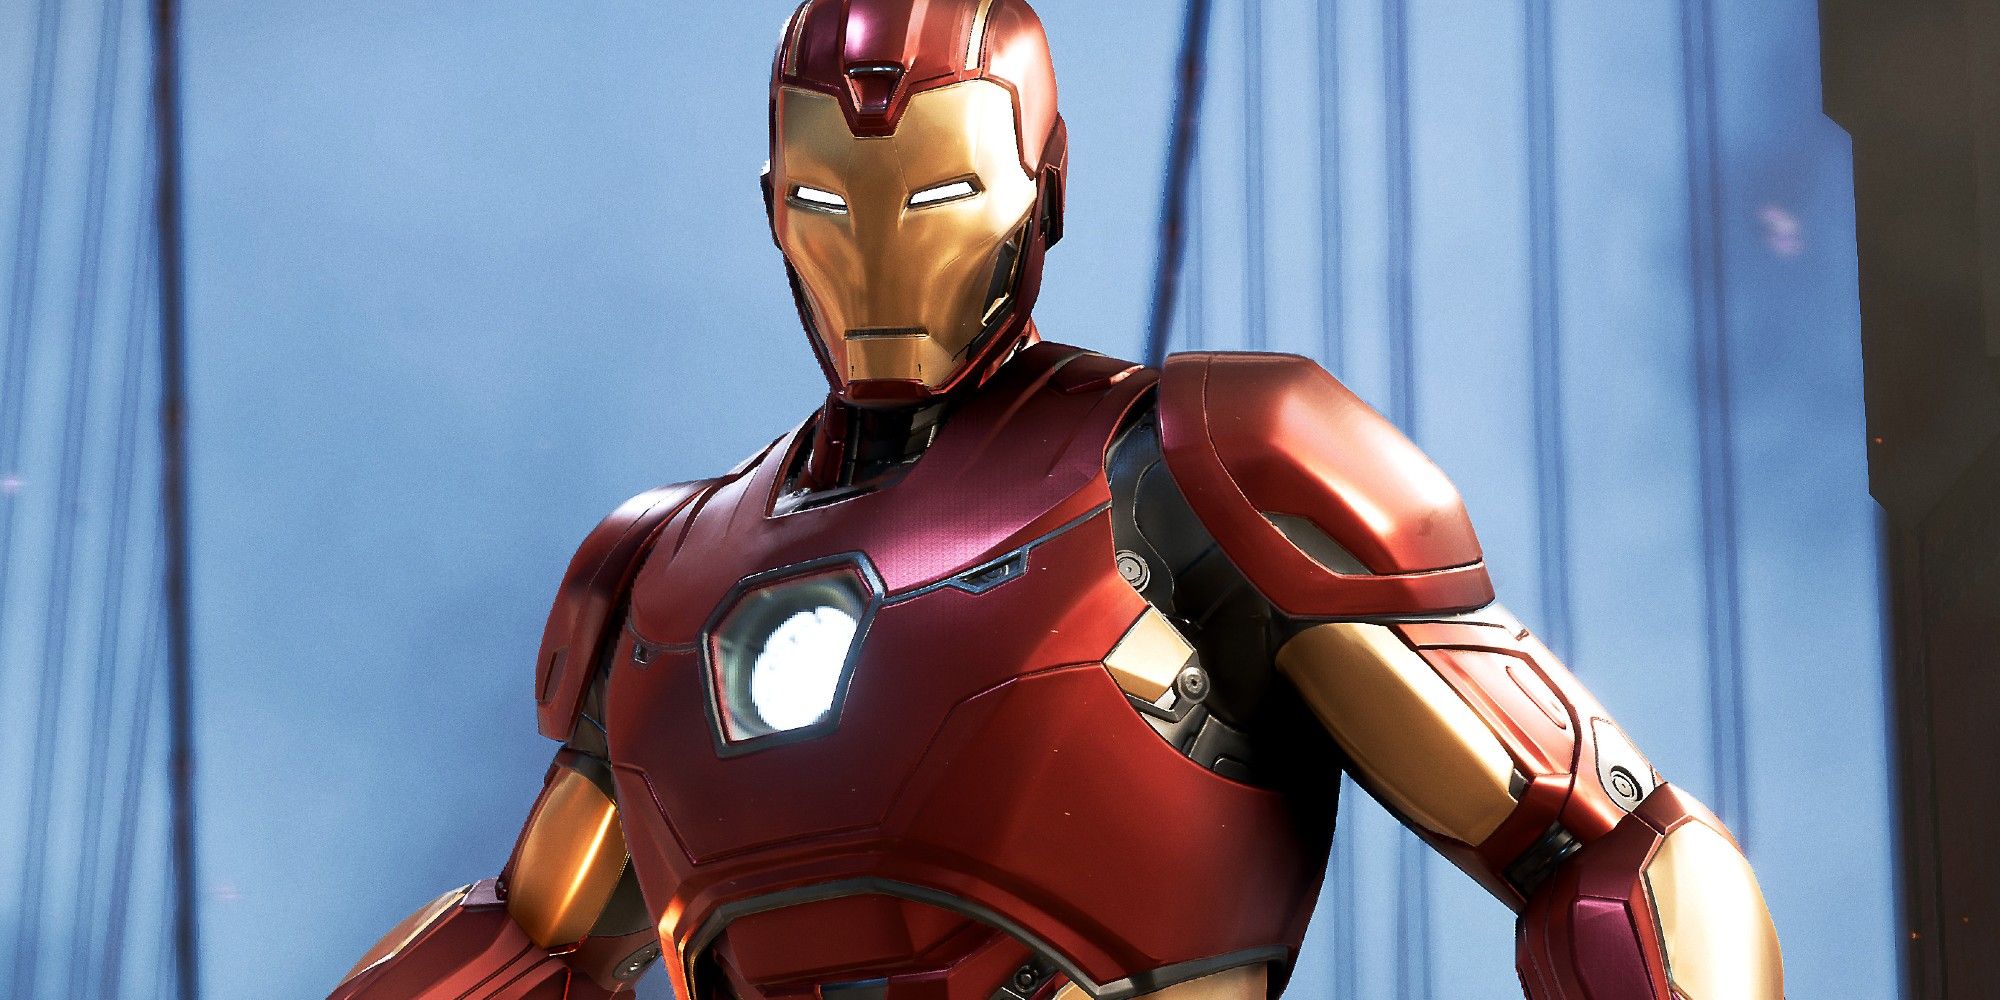 Iron Man battling Taskmaster's Army in Marvel's Avengers